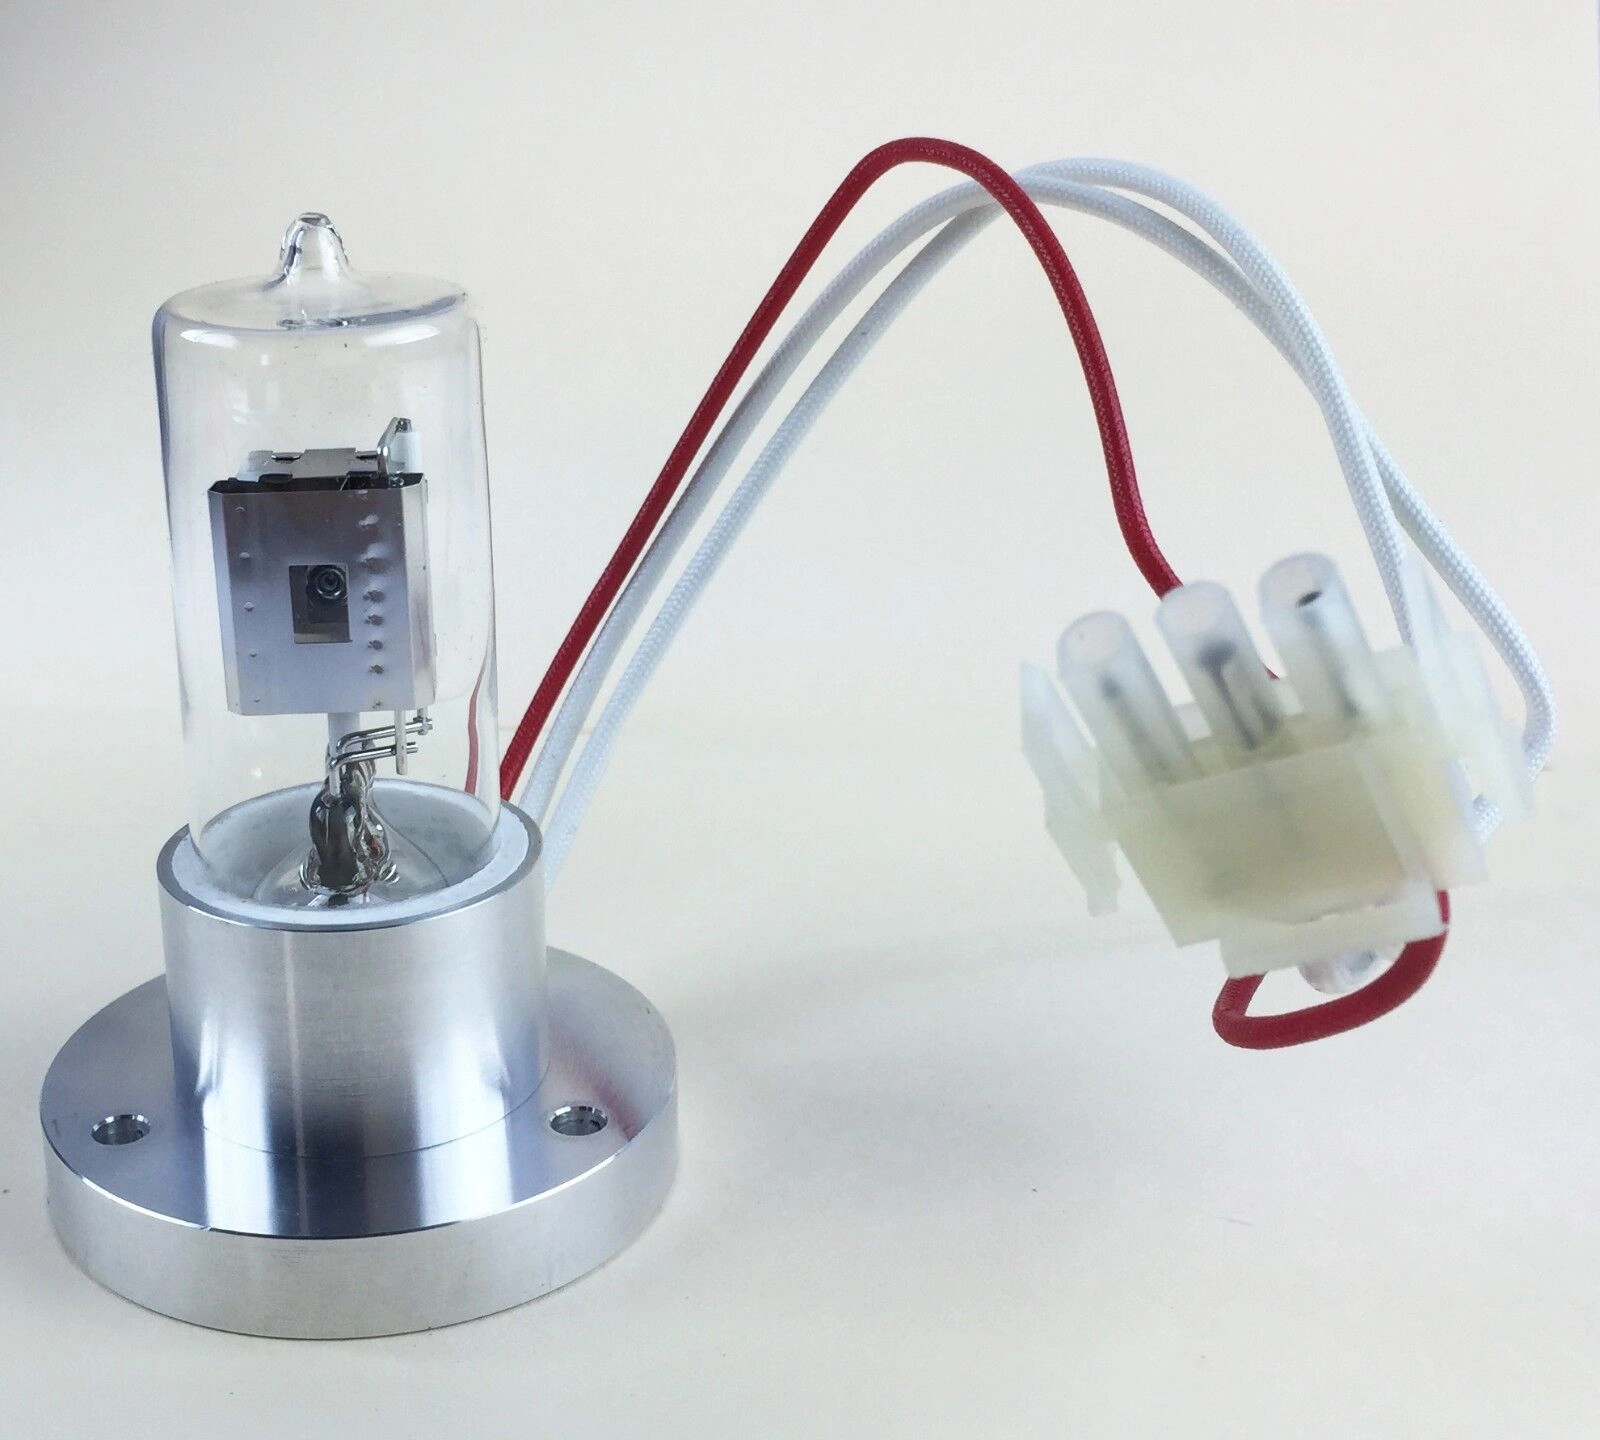 Deuterium Lamp for Waters HPLC 486